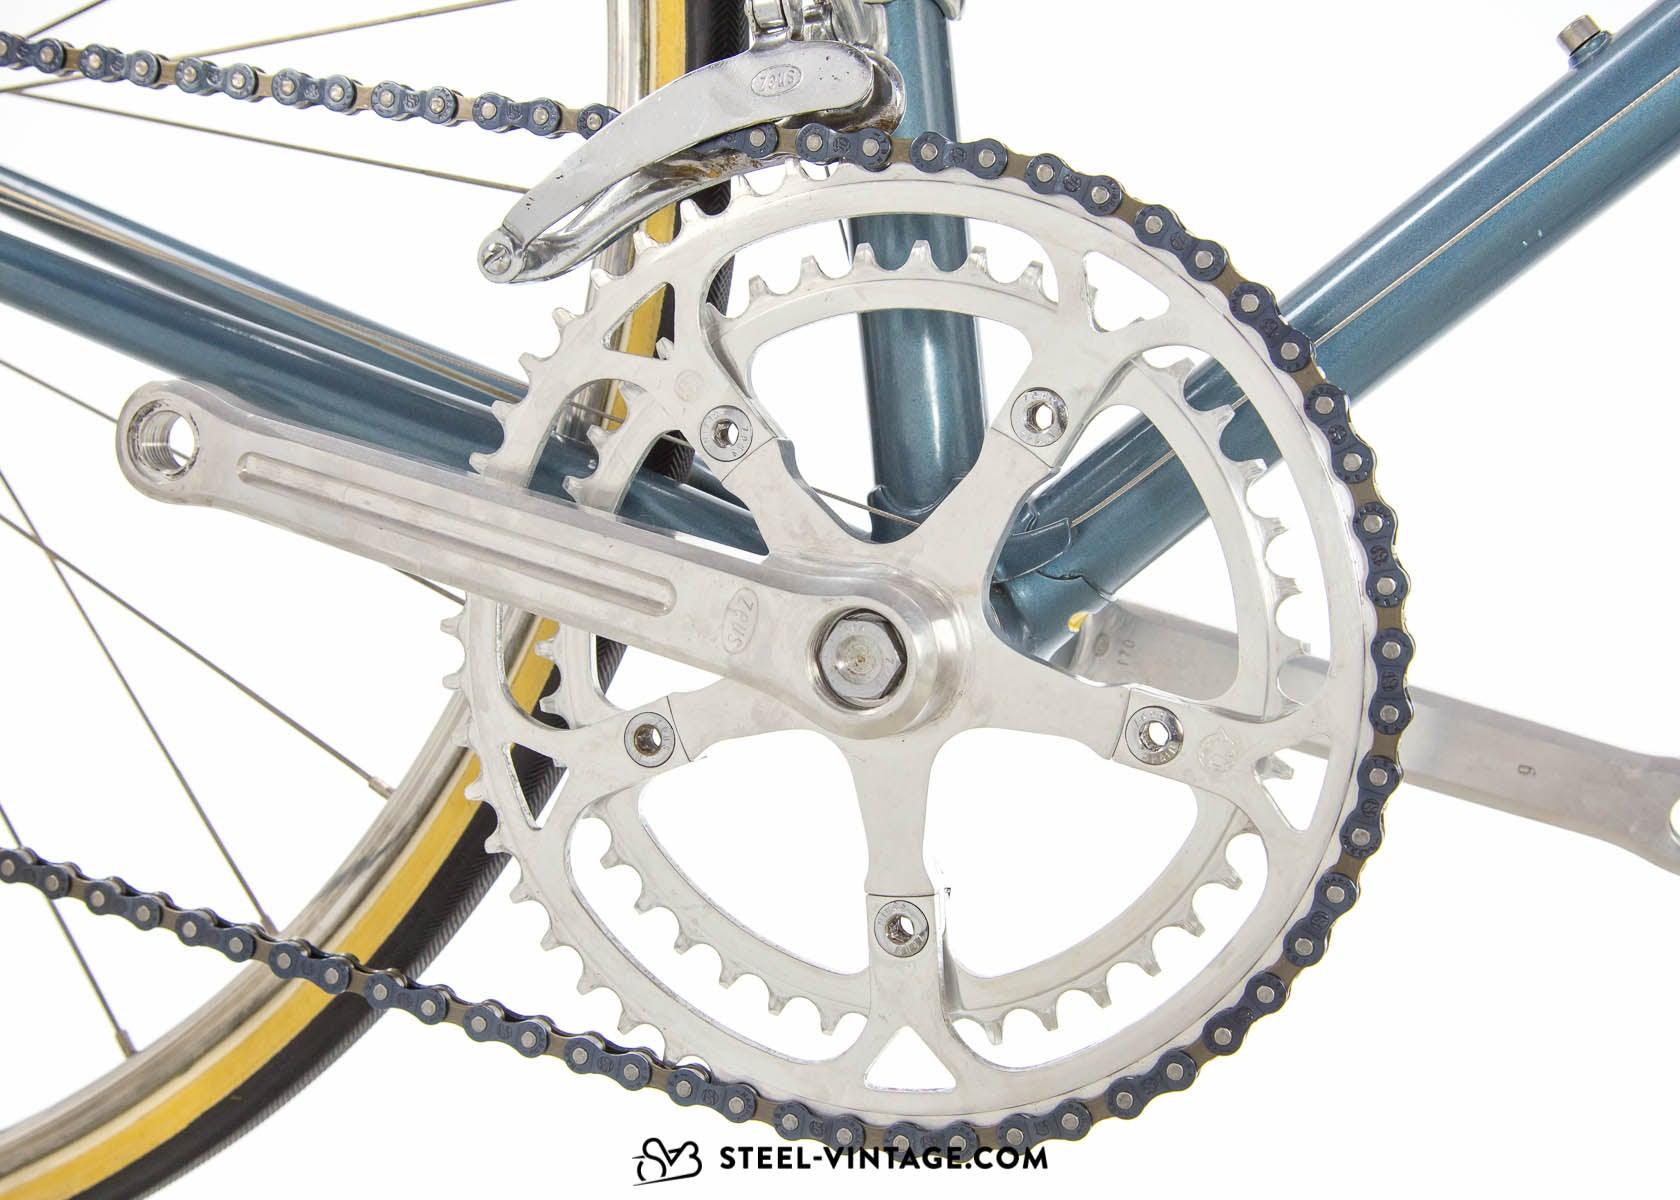 Chesini ゼウス・クラシック・ロード自転車 1970年代 Steel Vintage Bikes